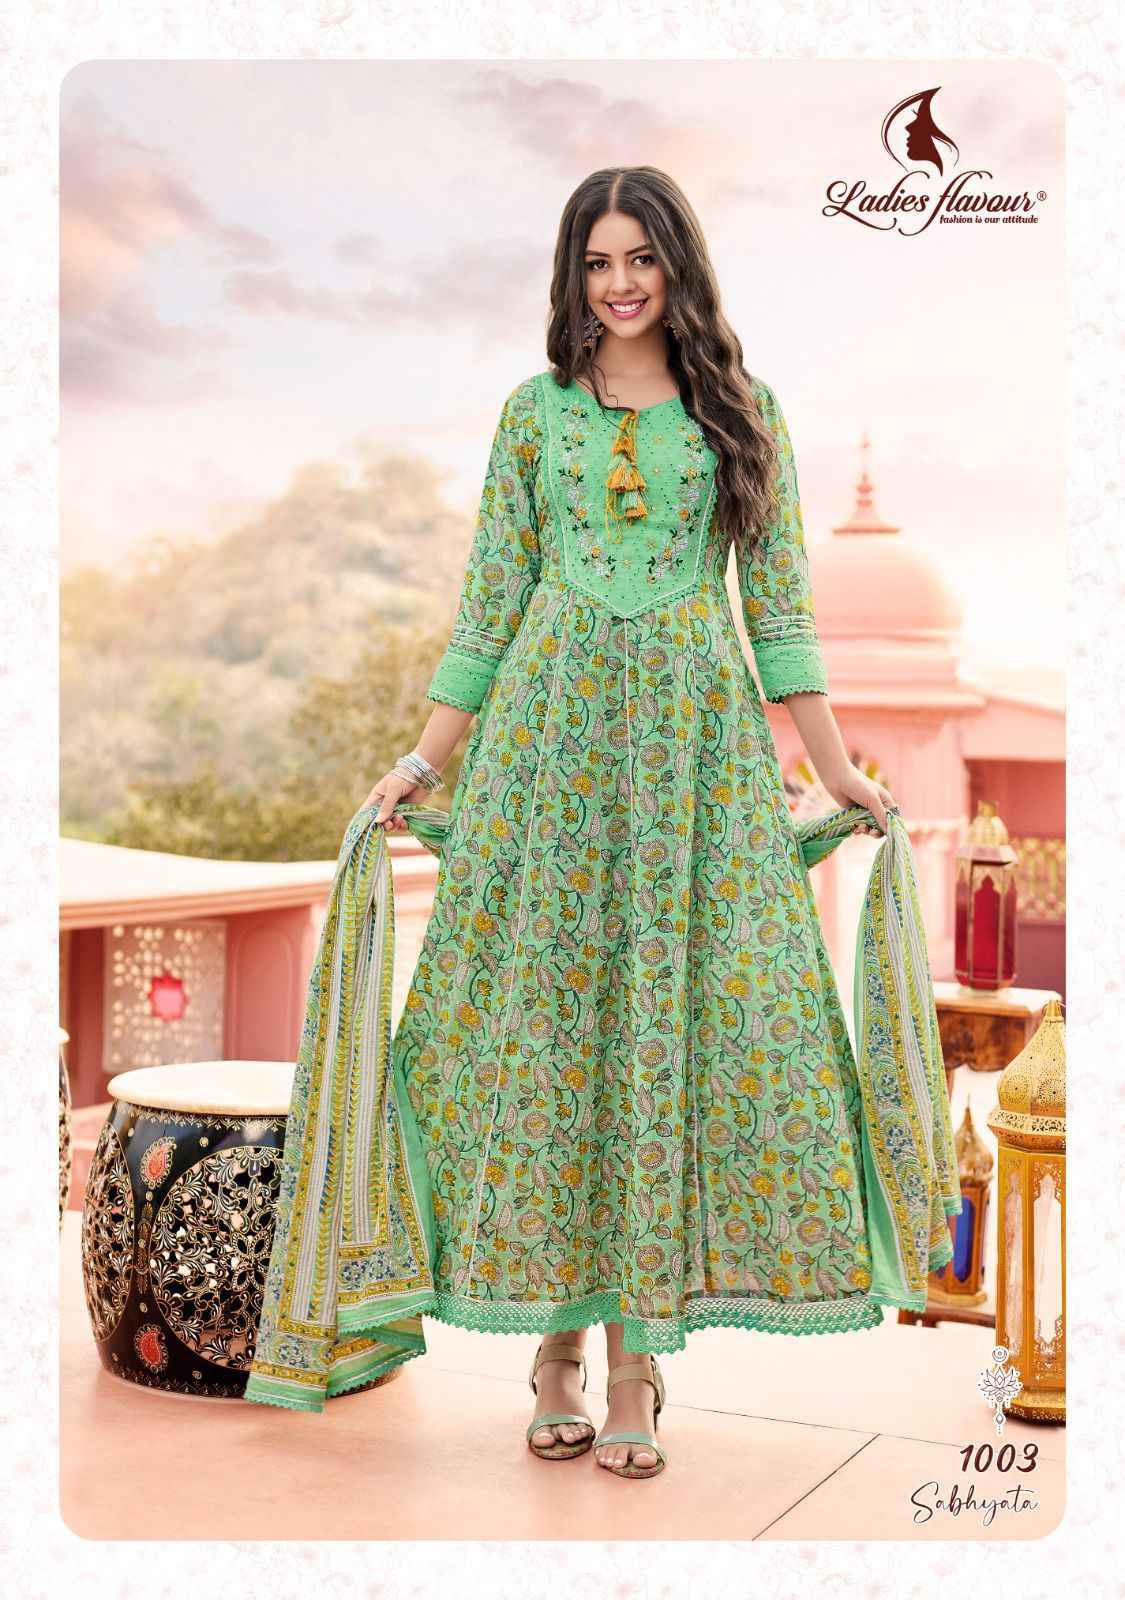 Ladies Flavour Sabhyata Vol 1 Cotton Anarkali Gown With Dupatta 4 pcs Catalogue